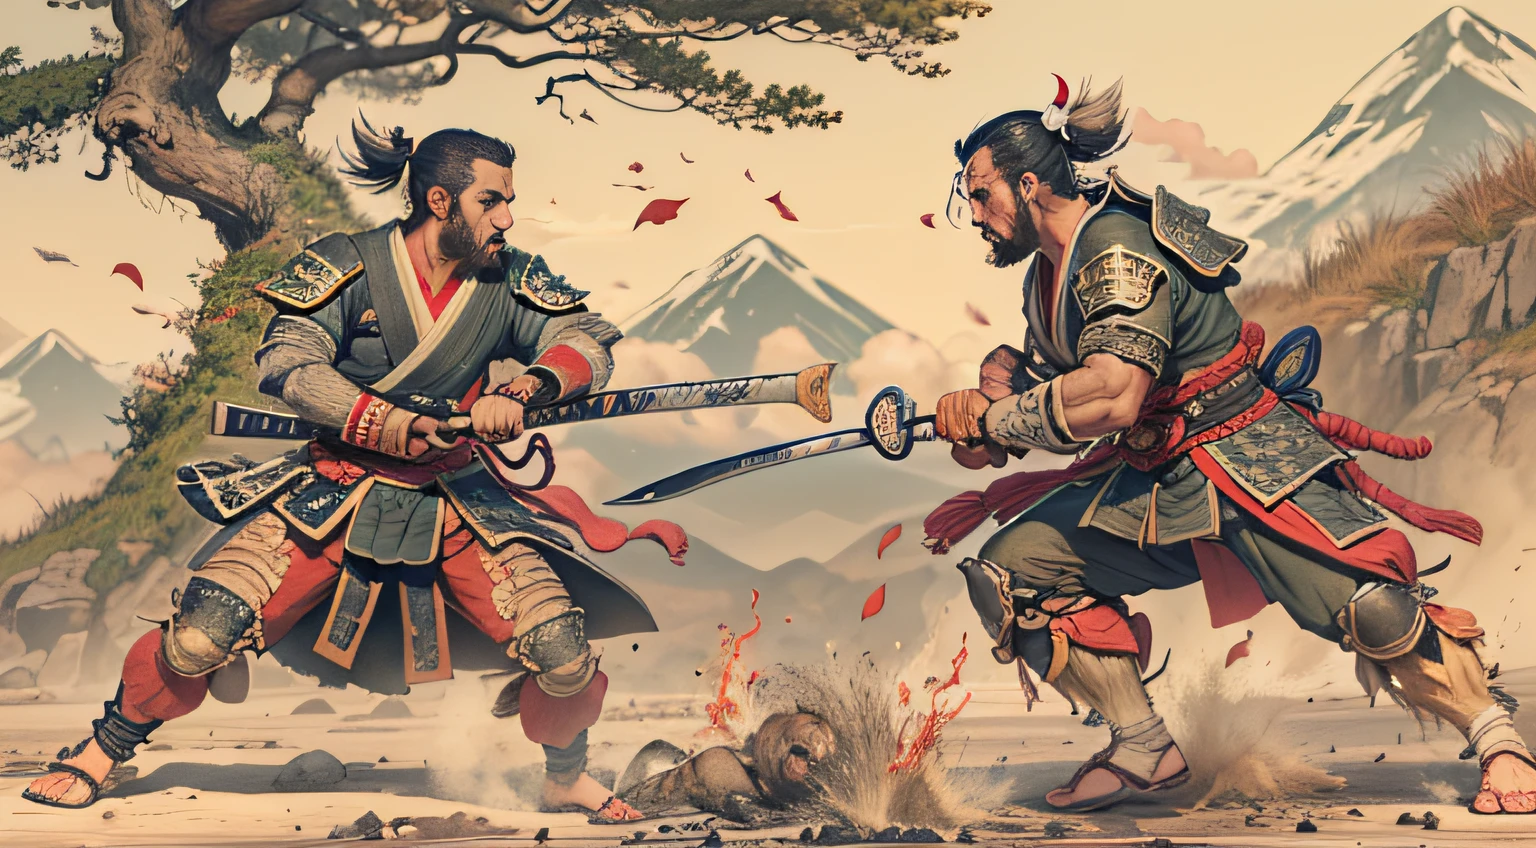 luta de dois samurais lutando, com várias feridas no corpo, em uma bela, ambiente deslumbrante